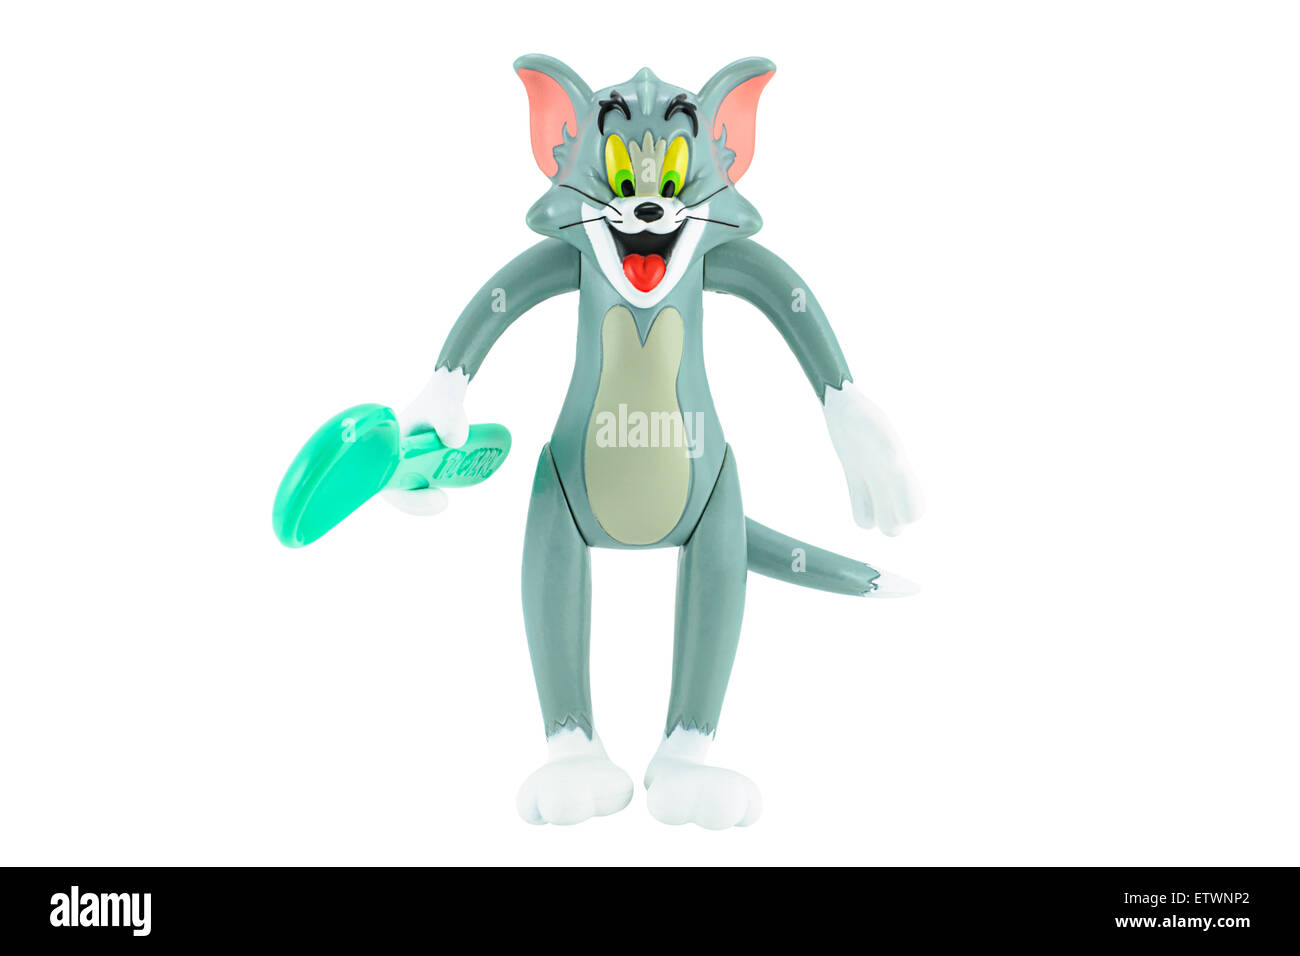 Bangkok, Thaïlande - 17 Février, 2015 : Tom chat gris avec une cuillère dans la main forme le caractère de jouets d'animation Tom et Jerry dessin animé. Banque D'Images